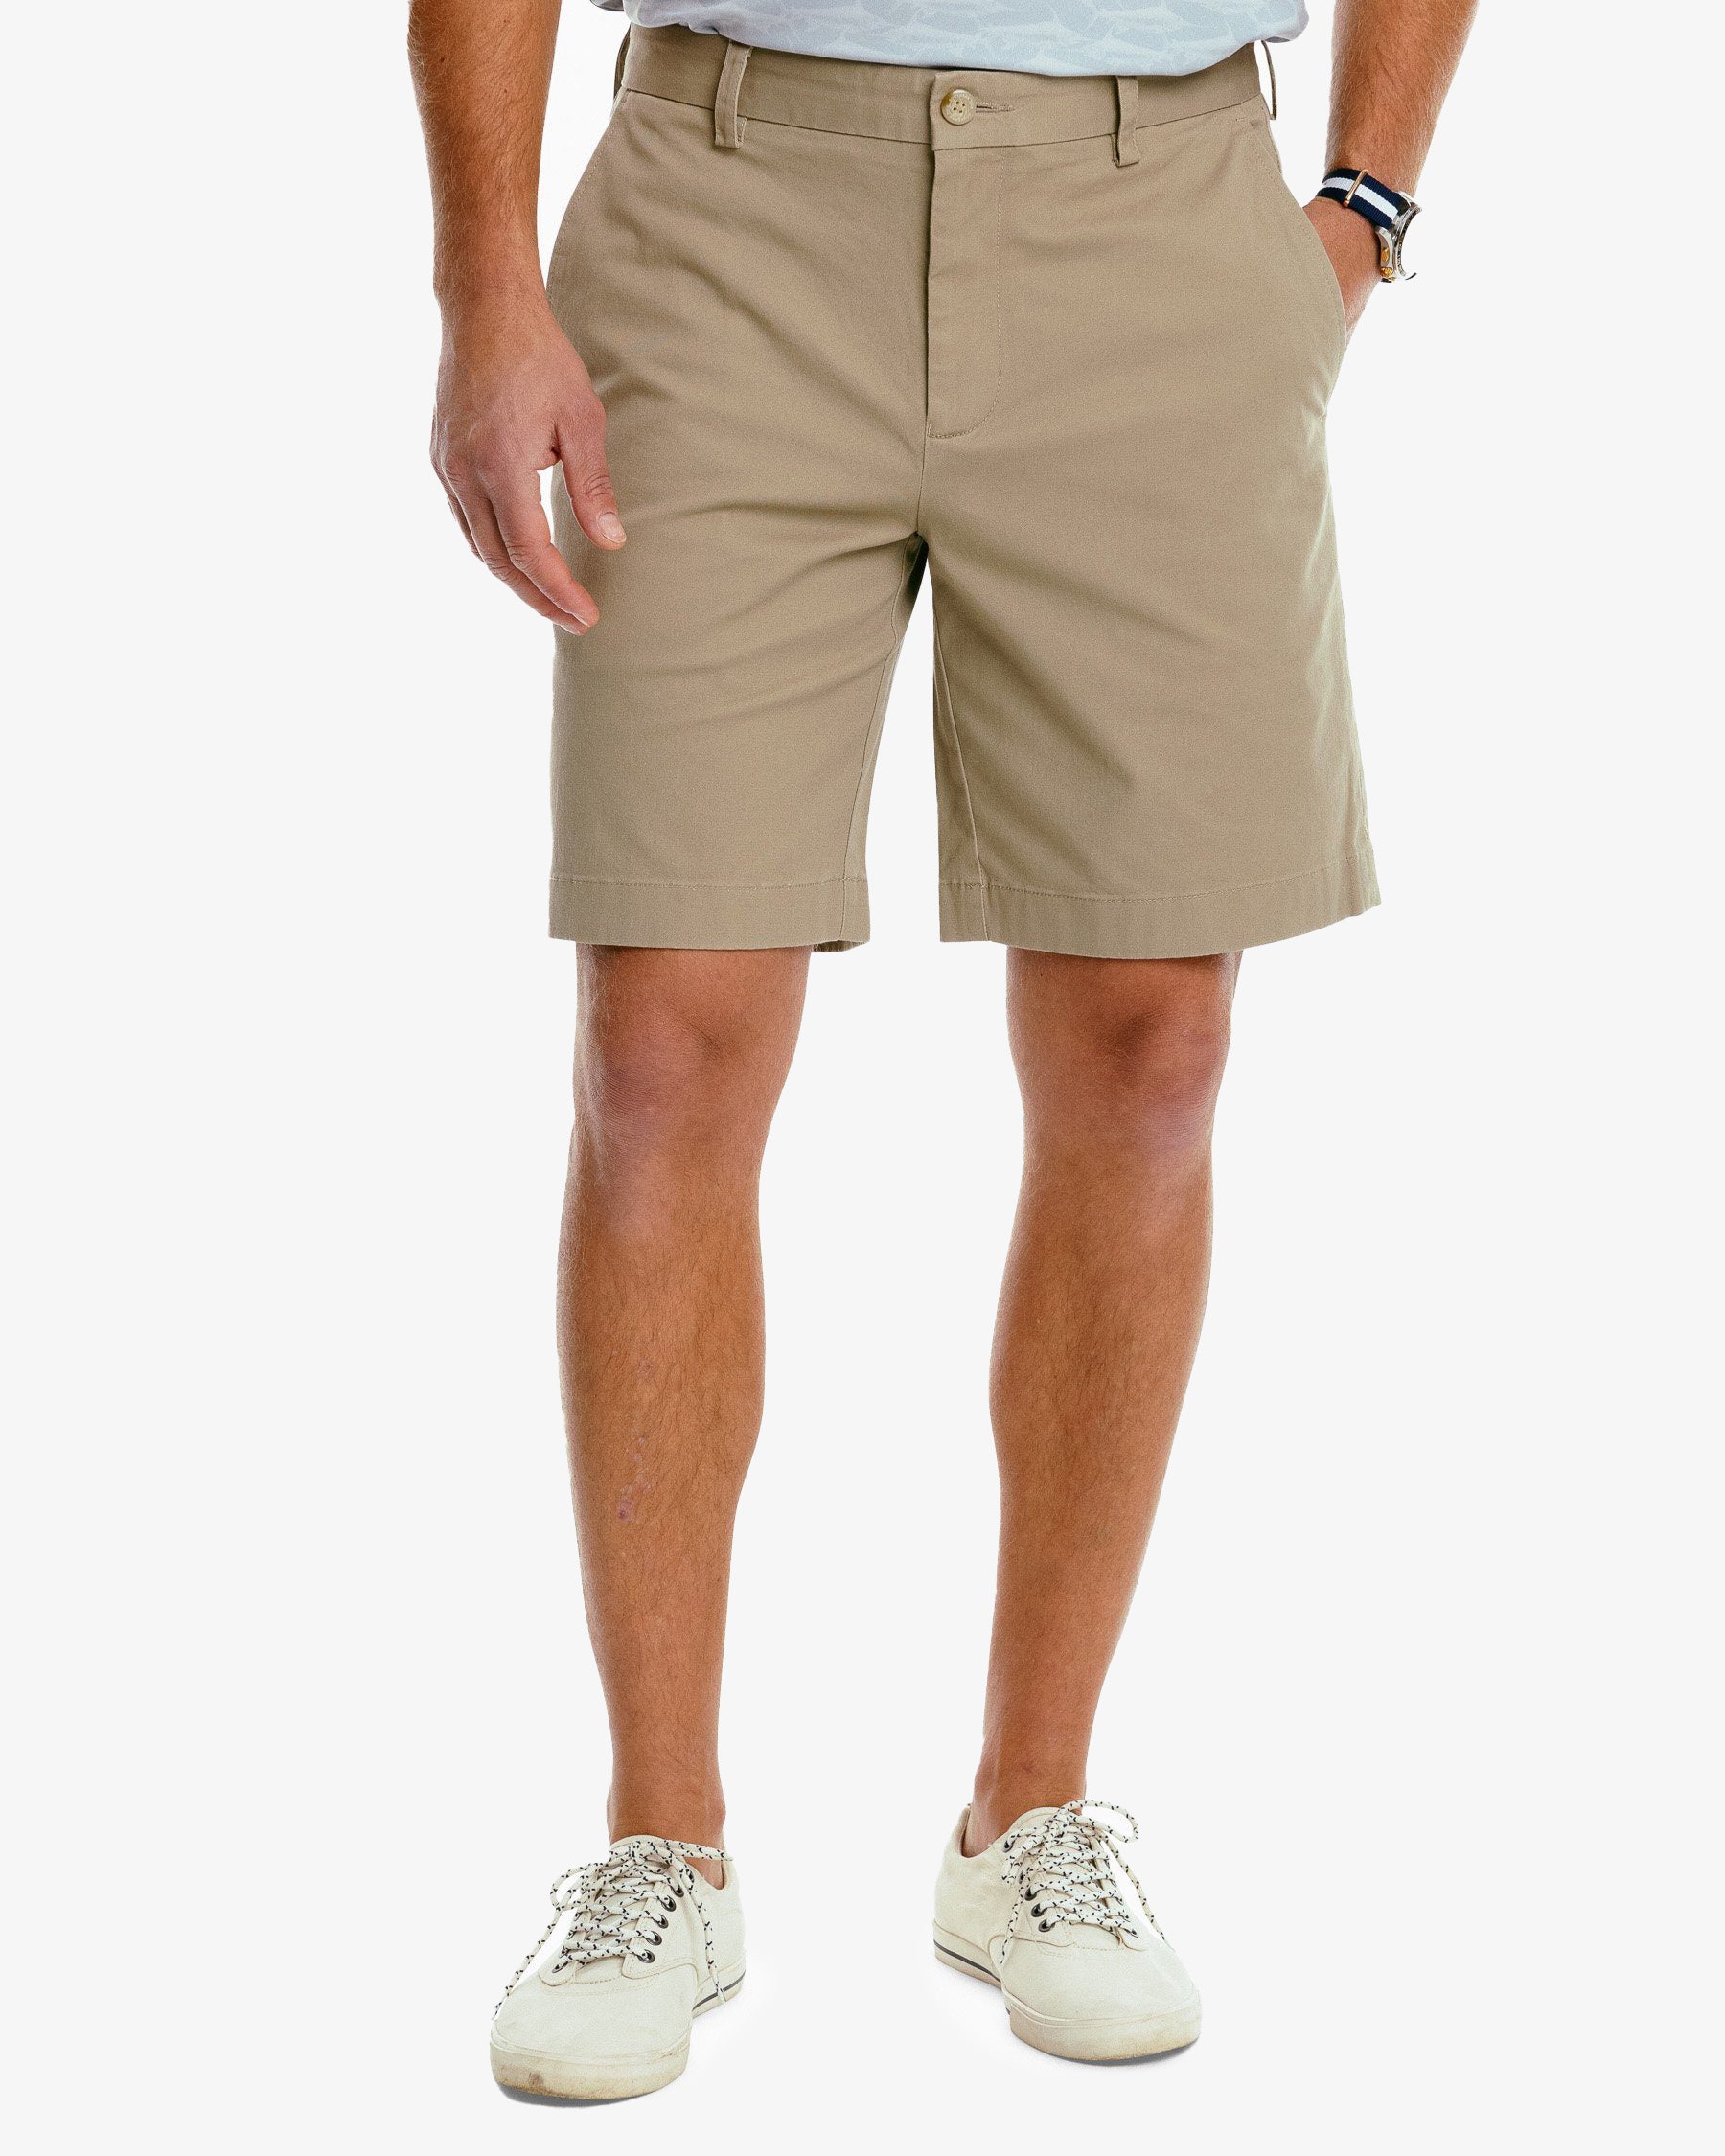 Elneeya Men's Casual Shorts Elastic Waist Outdoor Summer Breeches Solid  Color Short Pants Soft Comfortable Sweatpants Ropa Hombre - Walmart.com